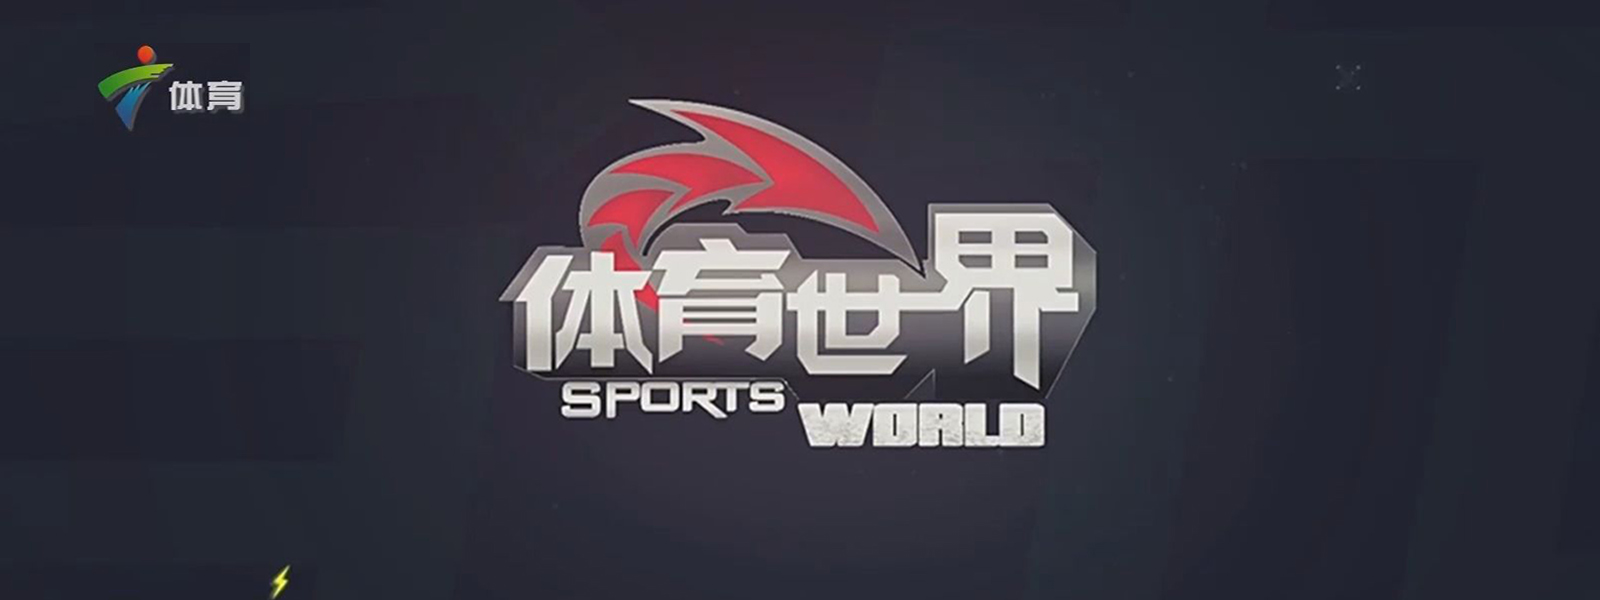 广东体育频道广告投放